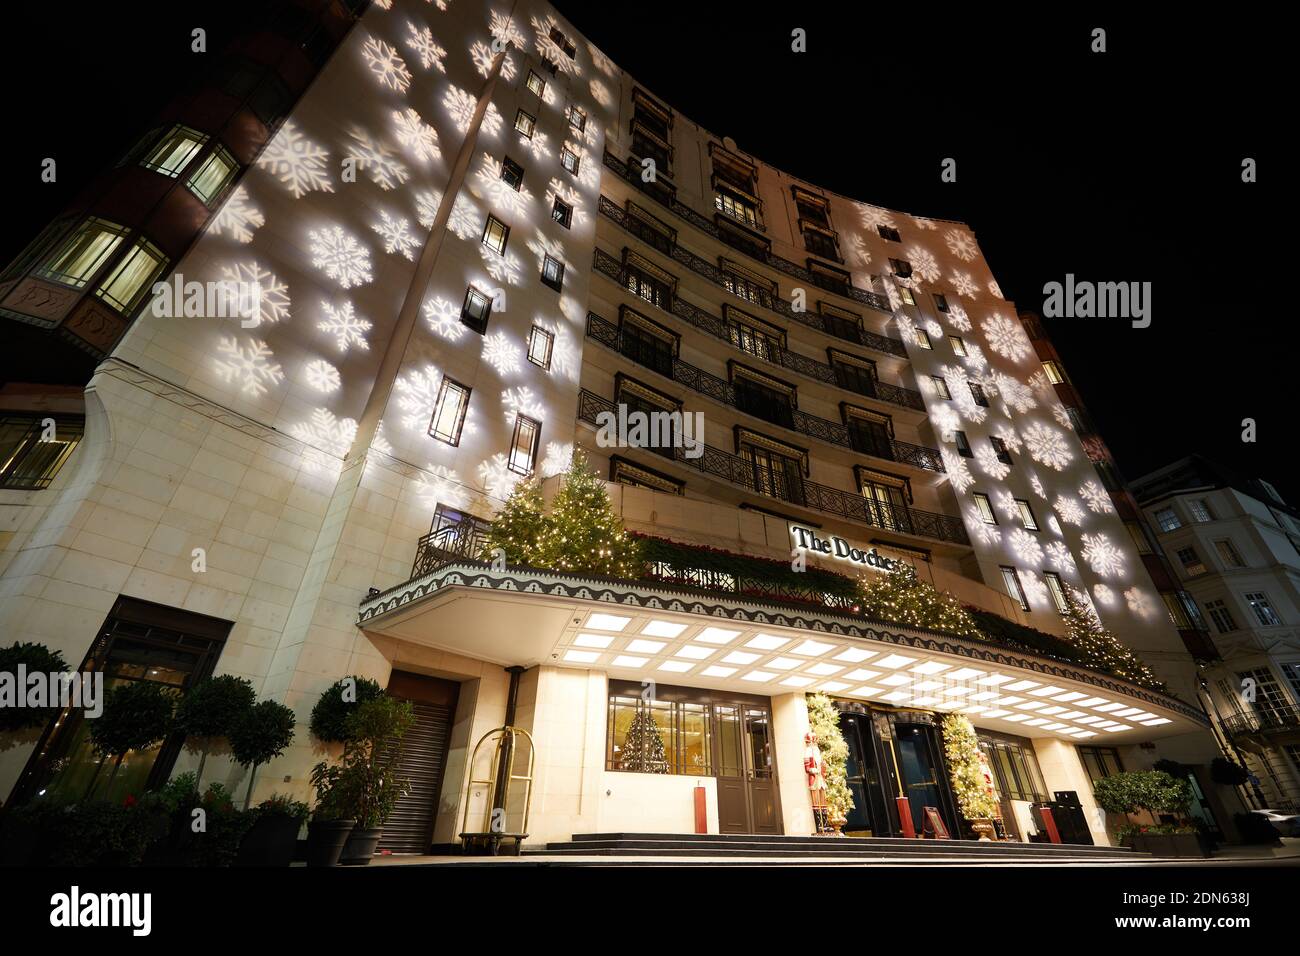 Londres, Reino Unido. - 17 Dic 2020: El Hotel Dorchester en Park Lane, proyectado con luces festivas para la temporada de Navidad 2020. Foto de stock